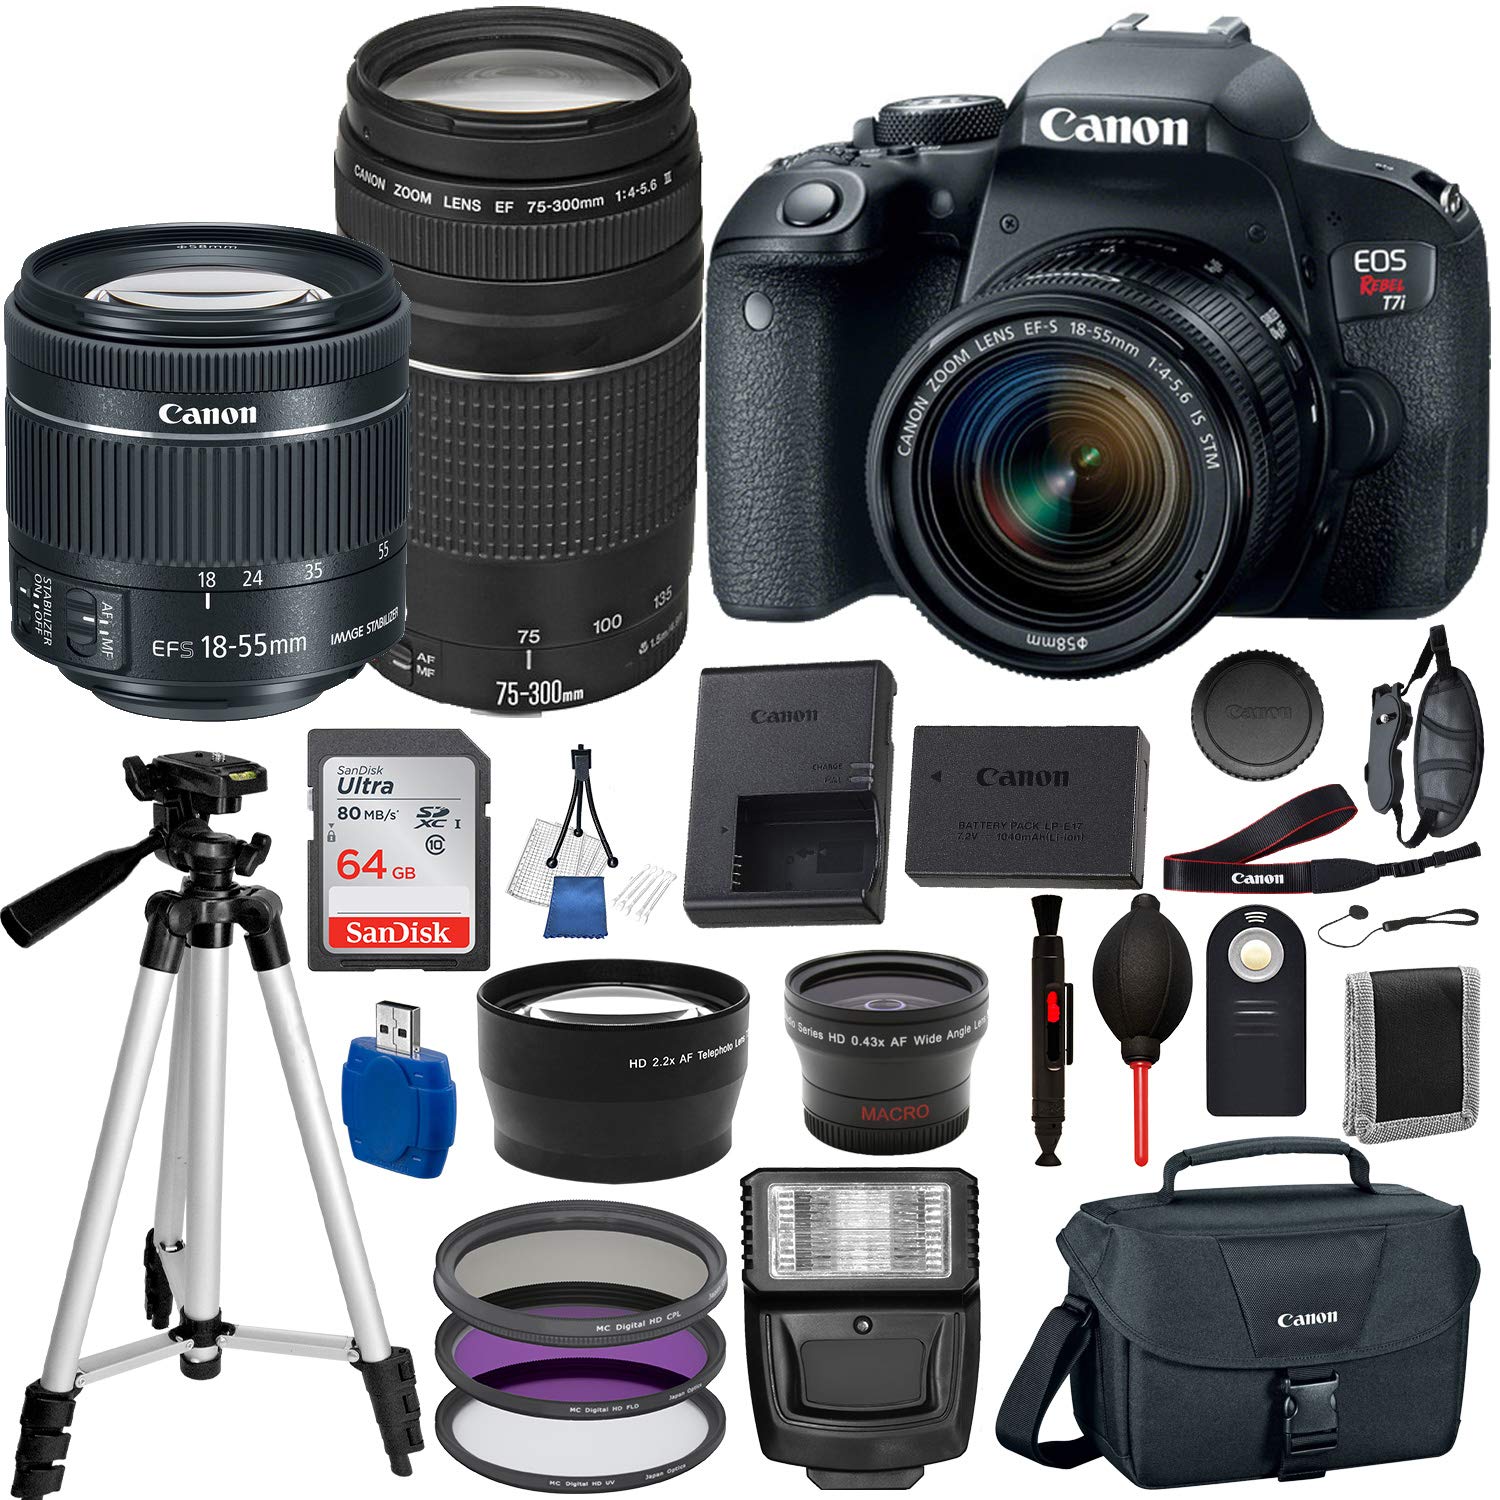 Canon EOS Rebel T7i/800D Digital SLR Camera with EF-S 18-55mm IS STM and EF 75-300mm Lens (Black) 19PC Professional Bundle